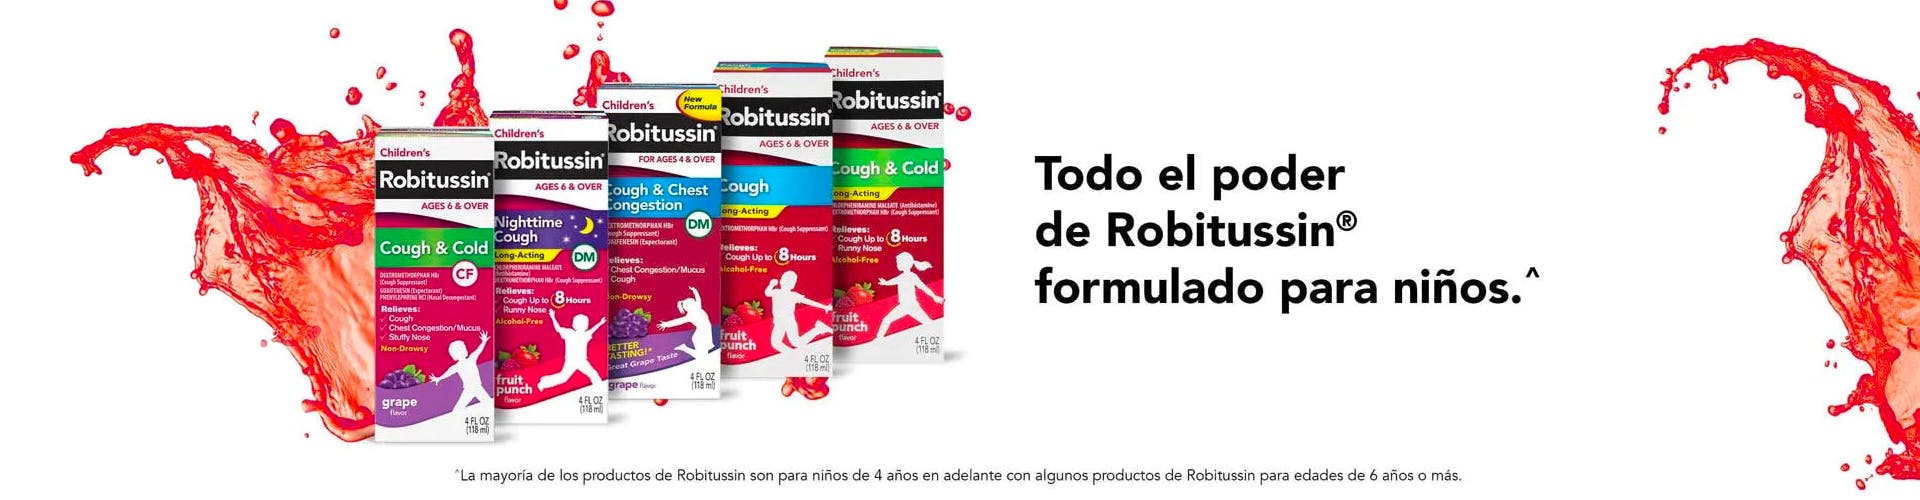 diferentes productos de Children's Robitussin para la tos y congestion sobre un fondo rojo y blanco